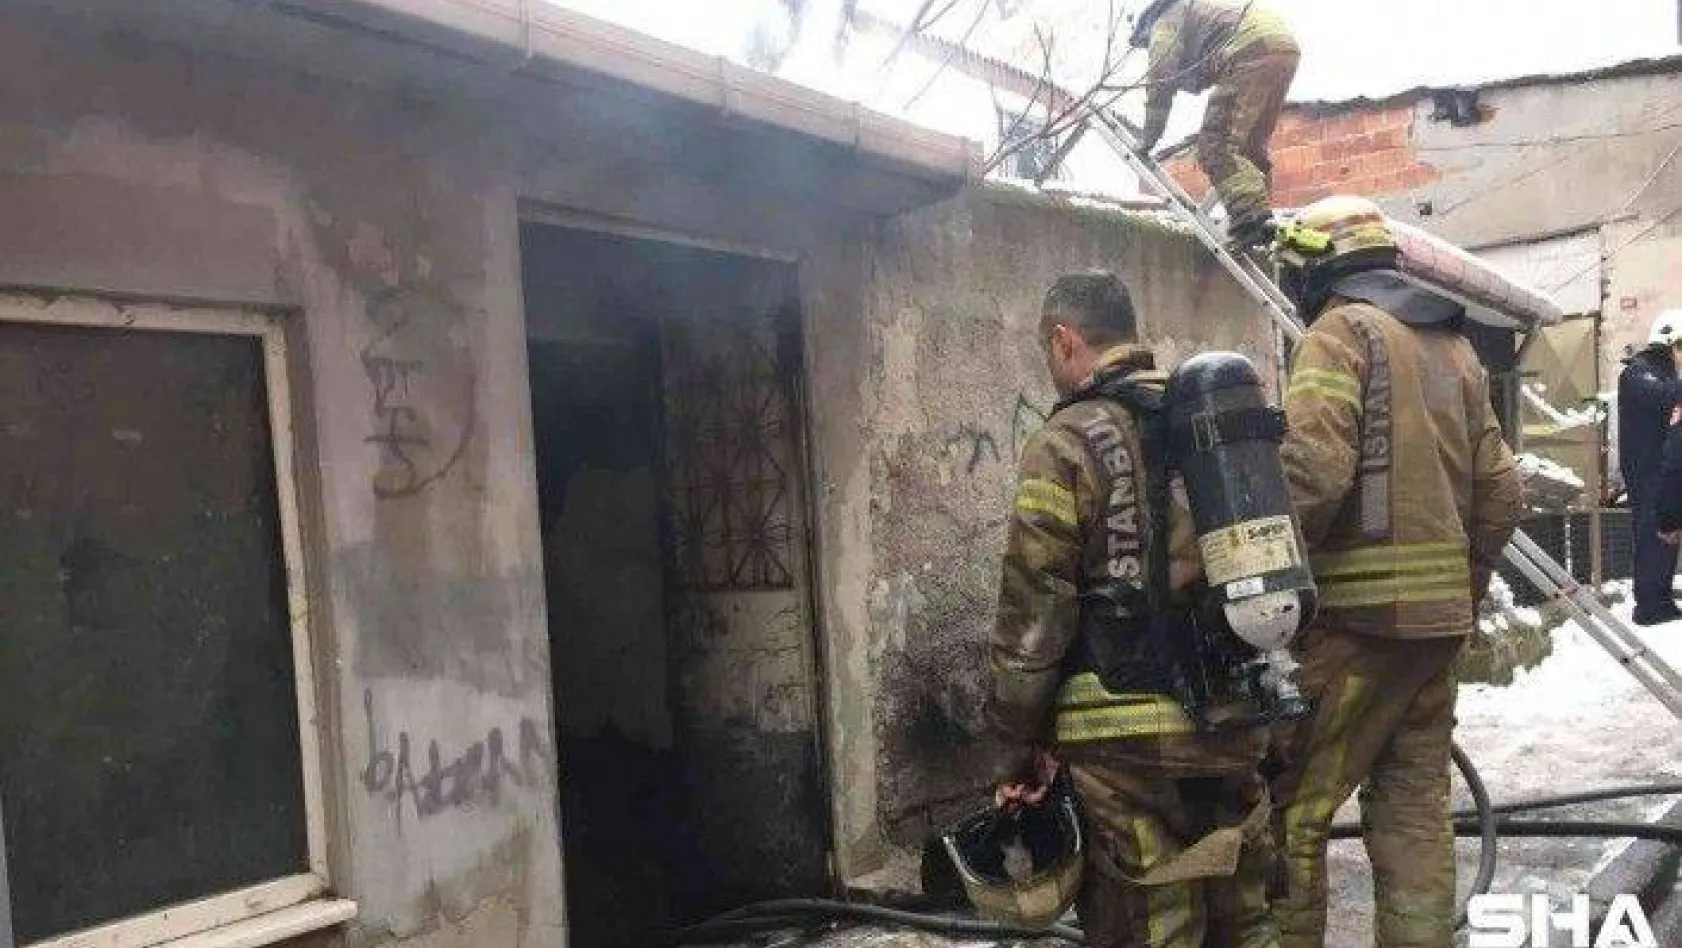 Beyoğlu'nda tek katlı evde yangın paniği